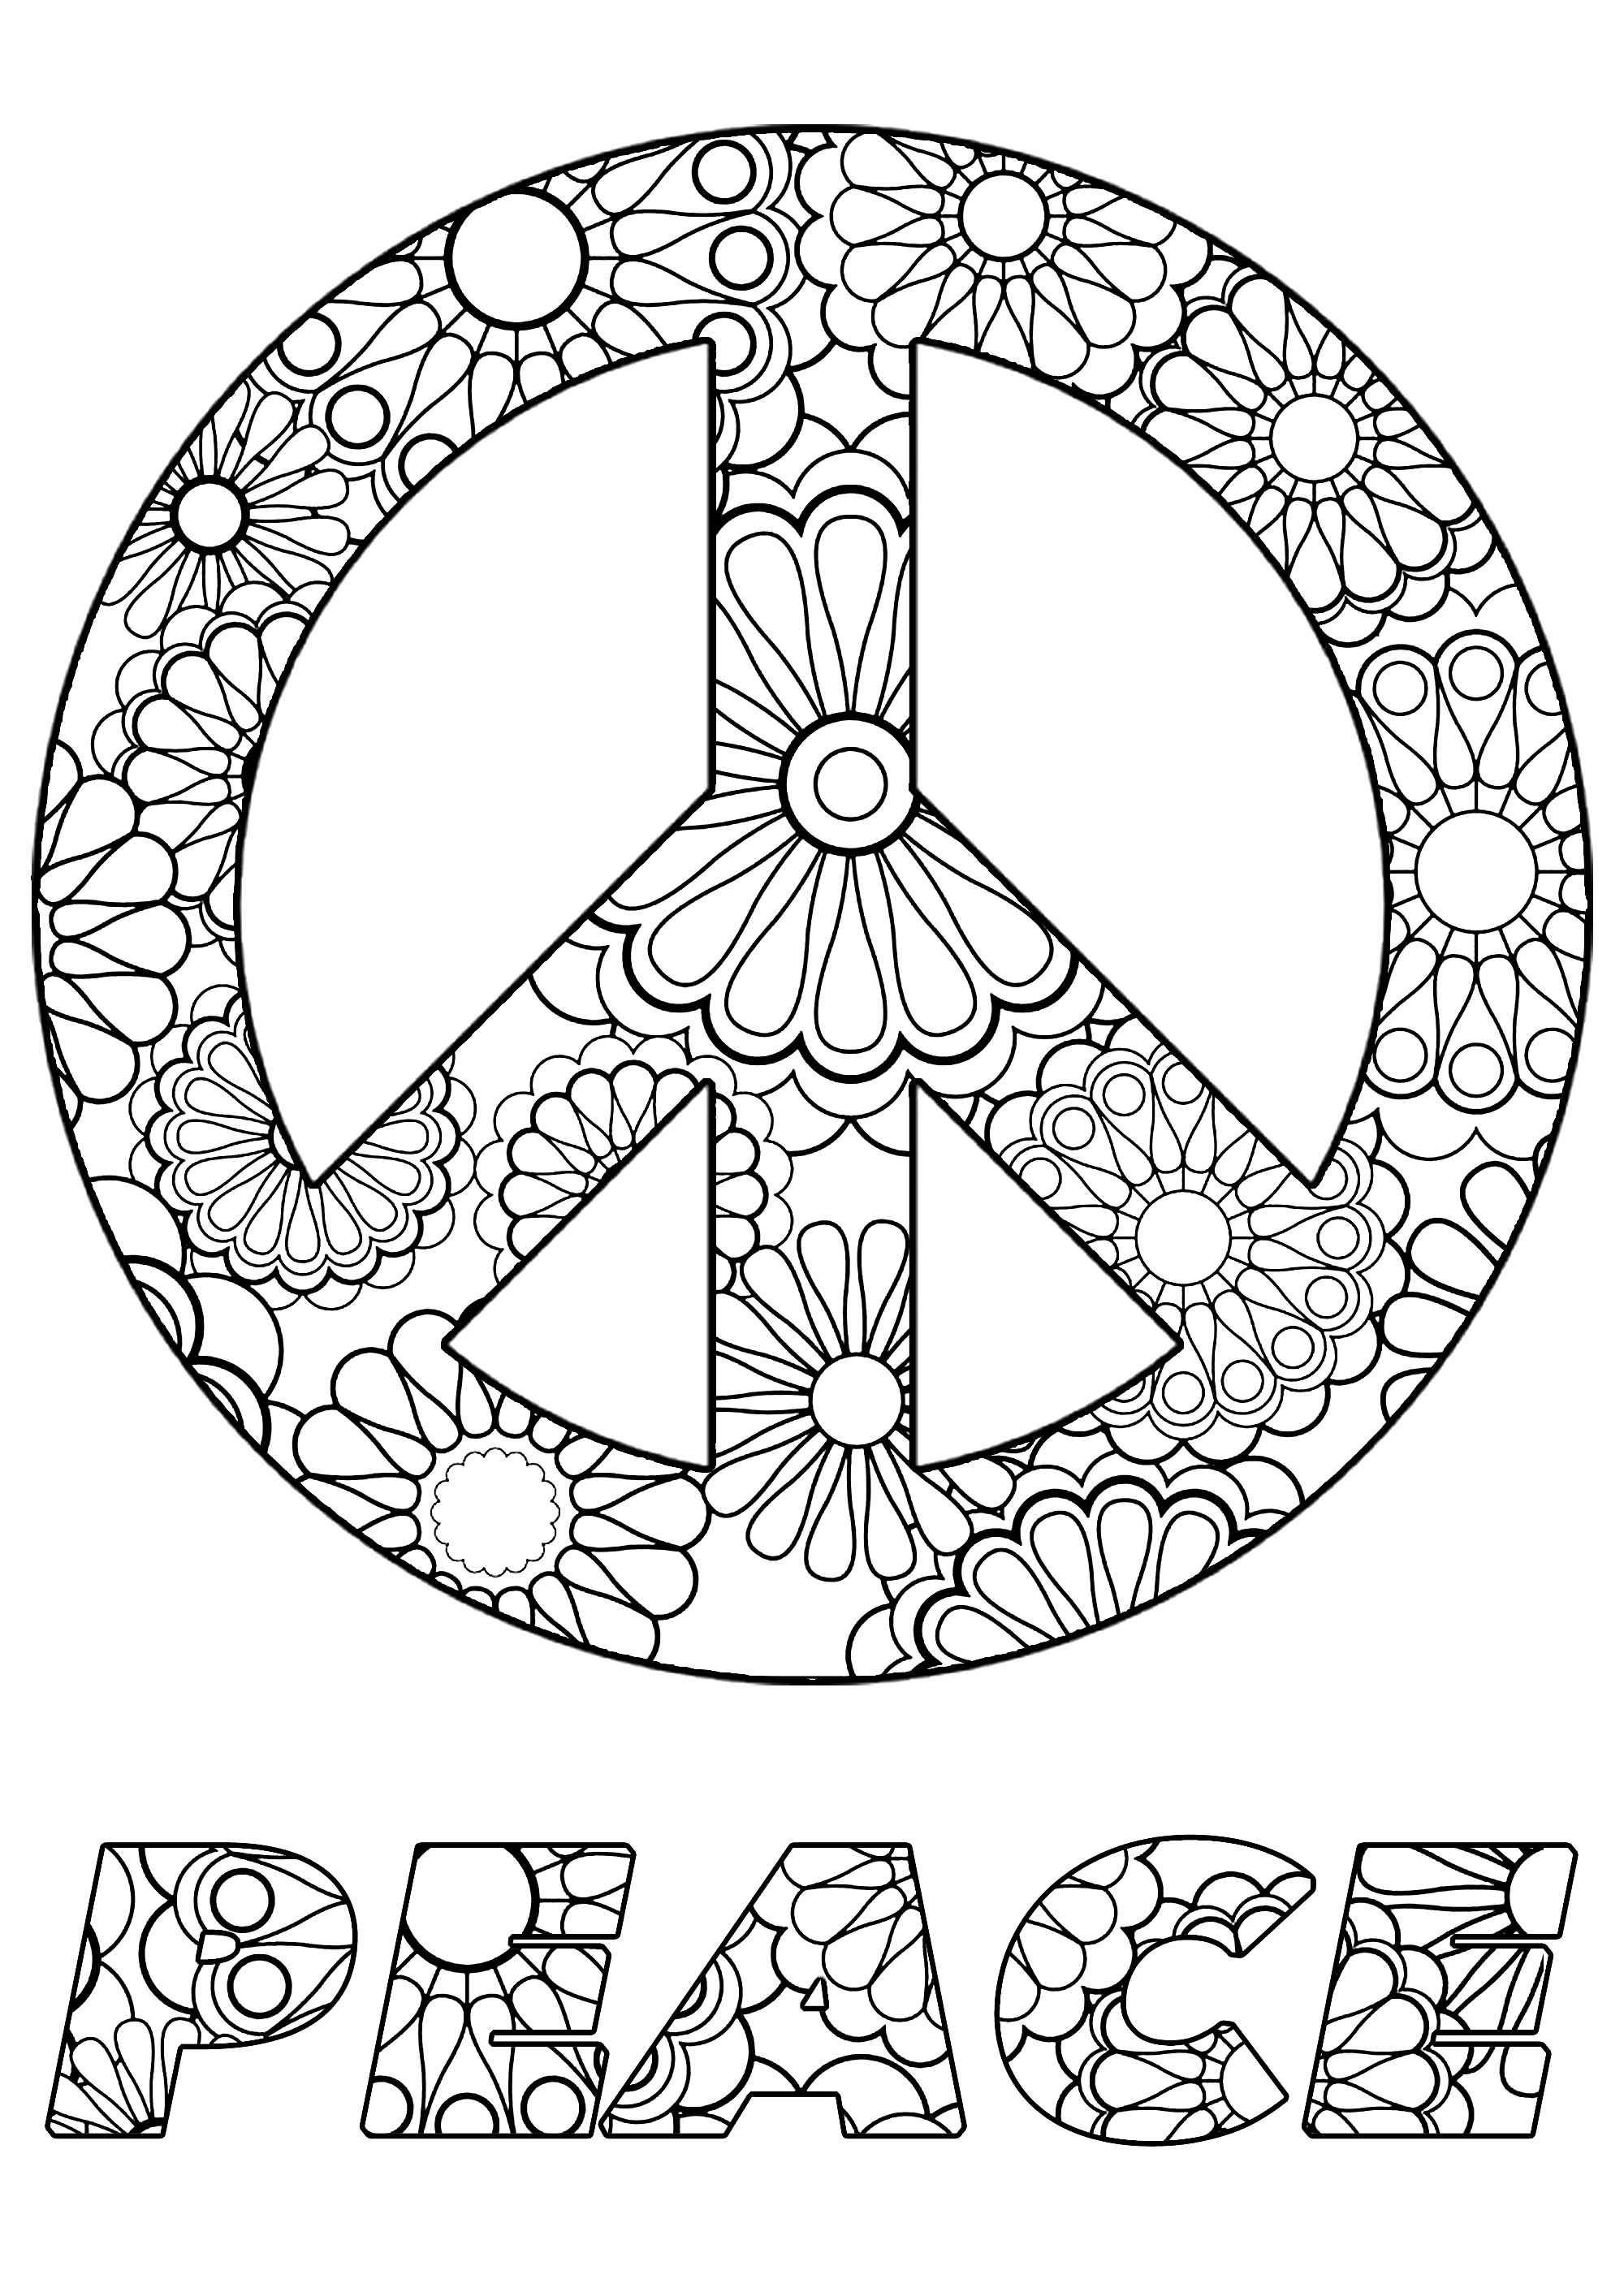 Colorea el símbolo y el texto de la Paz, con hermosas flores en su interior, Artista : Art'Isabelle